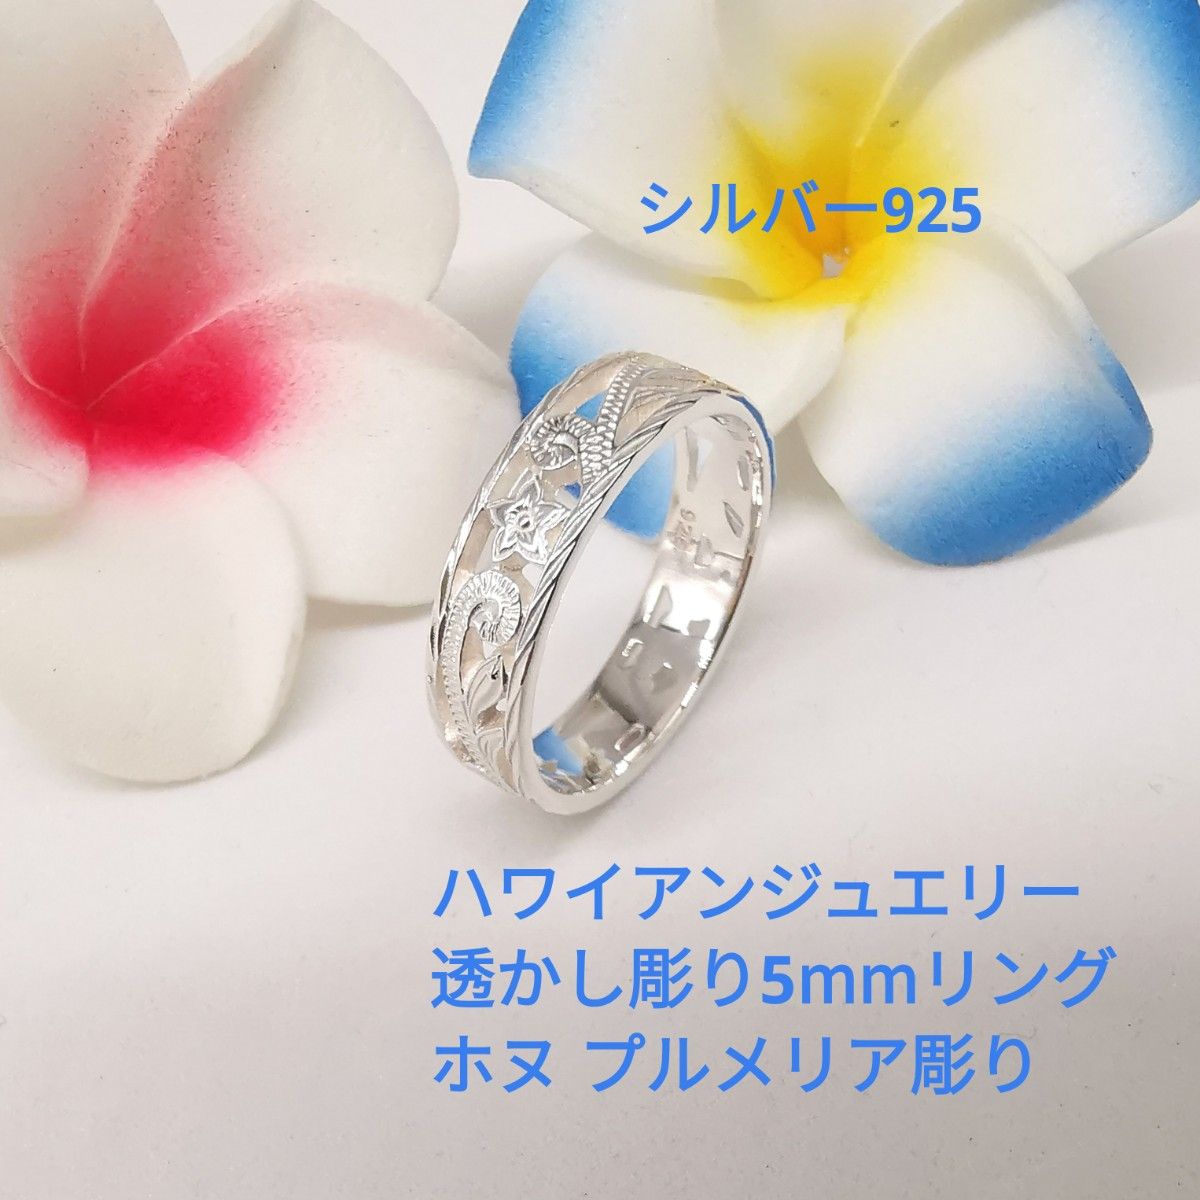 ハワイアンジュエリー シルバー925 綺麗な透かし彫り リング 指輪